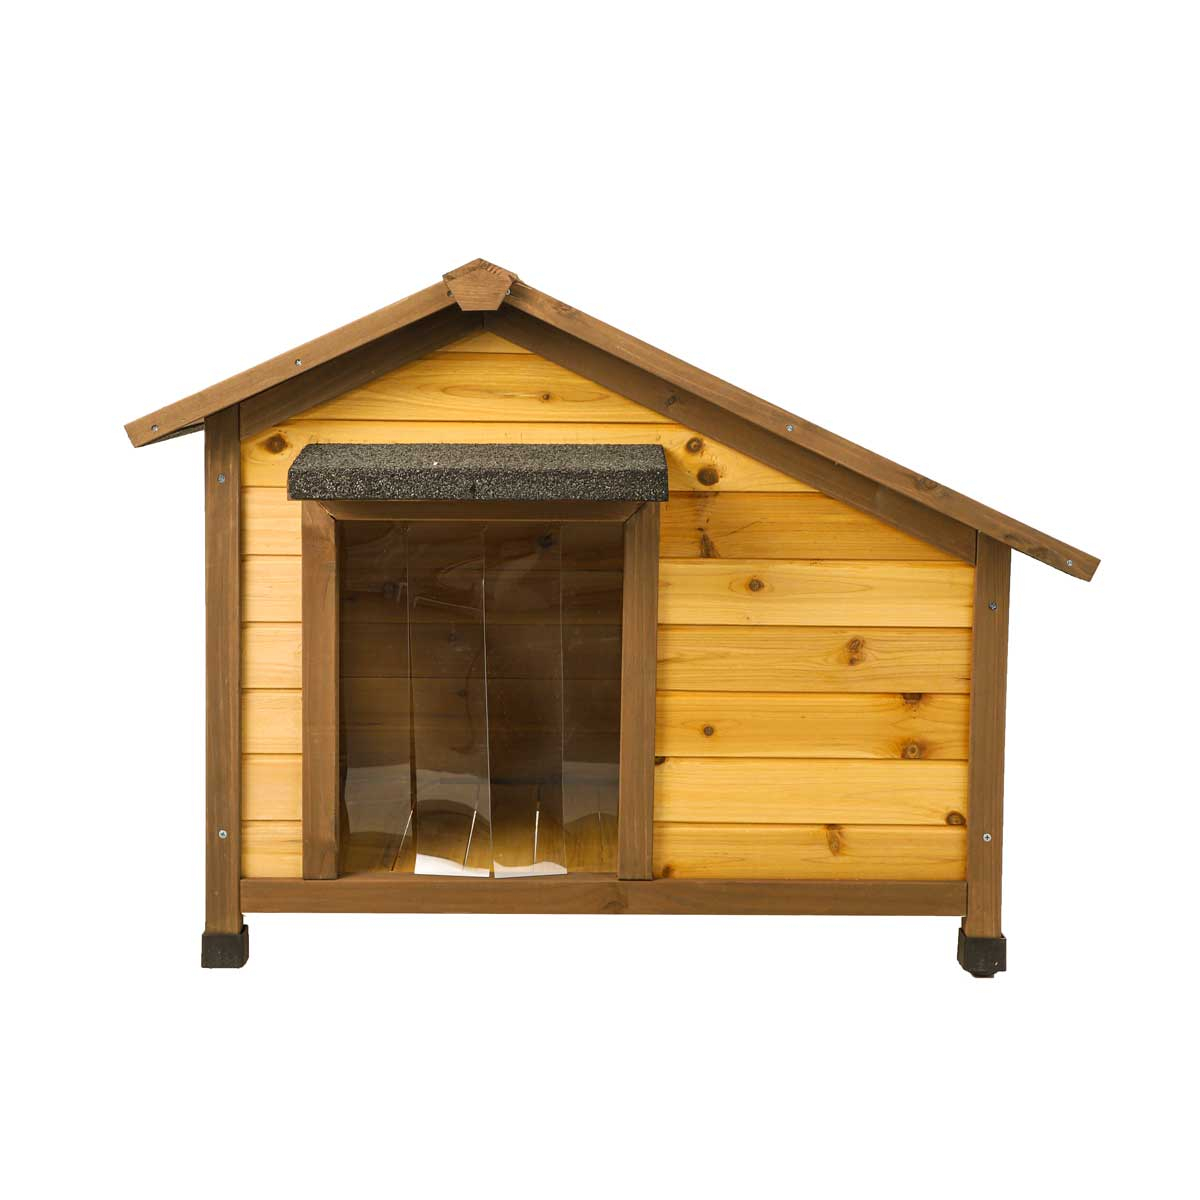 Cuccia per cani in legno con porta in plastica Zolia Honolulu - 3 dimensioni